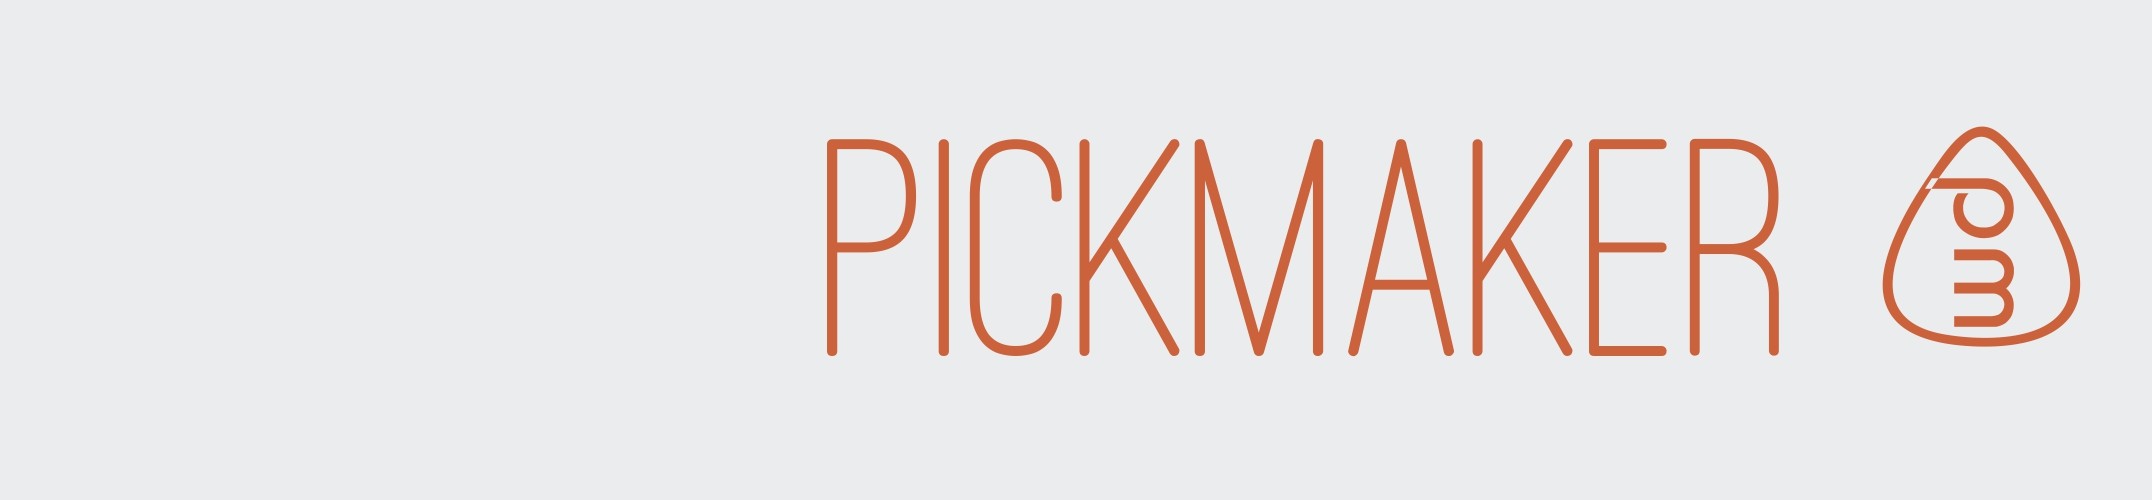 Pickmaker